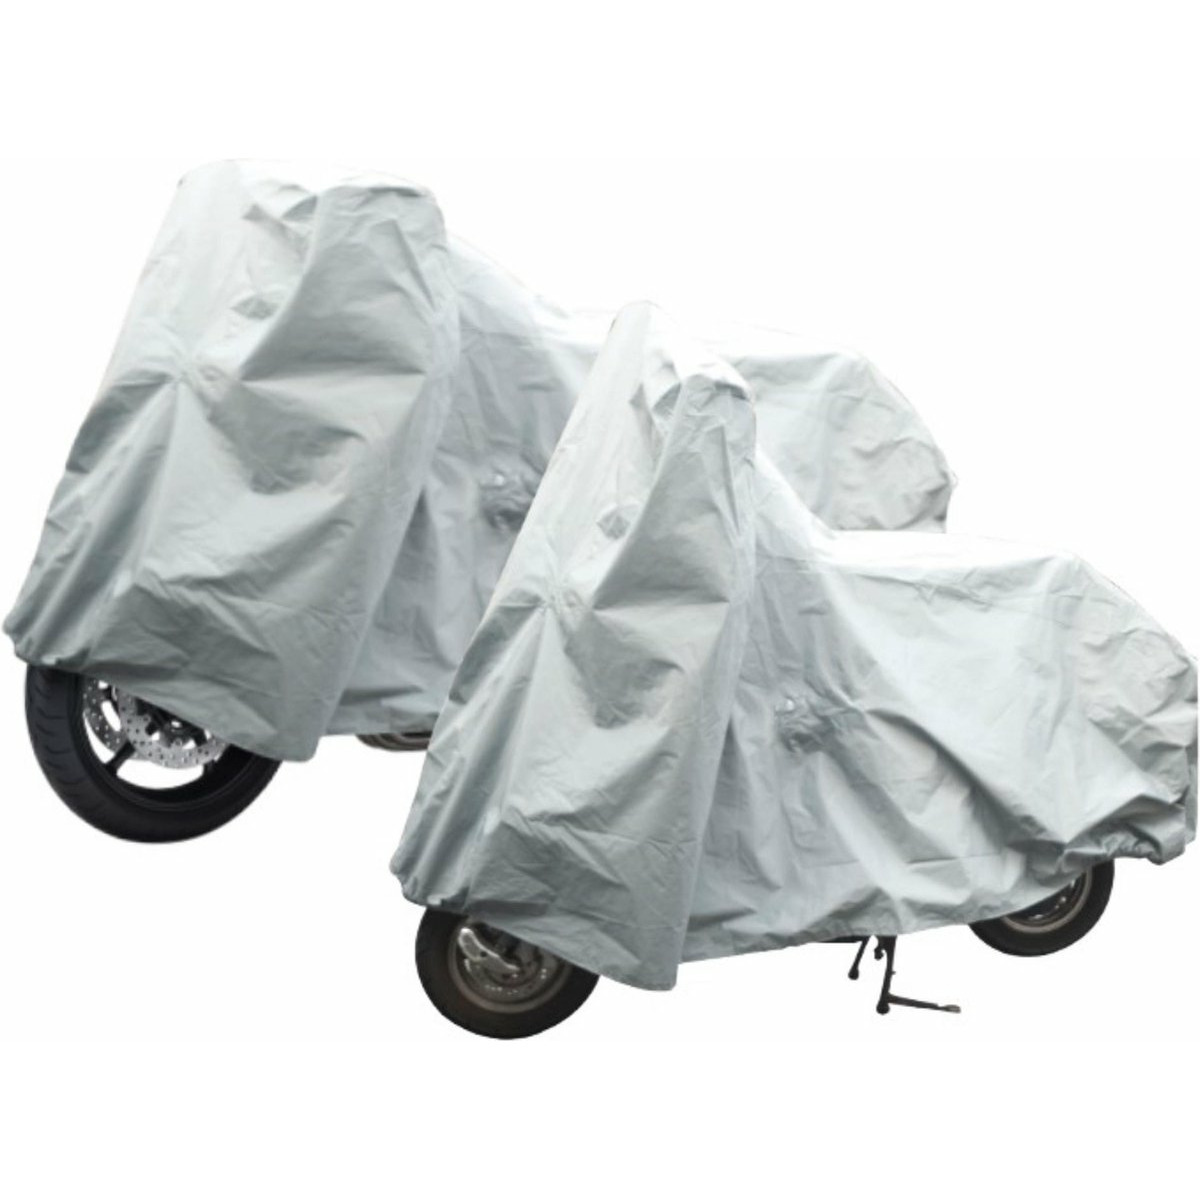 Beschermhoes motor-scooter-fiets 246 x 104 x 127 cm